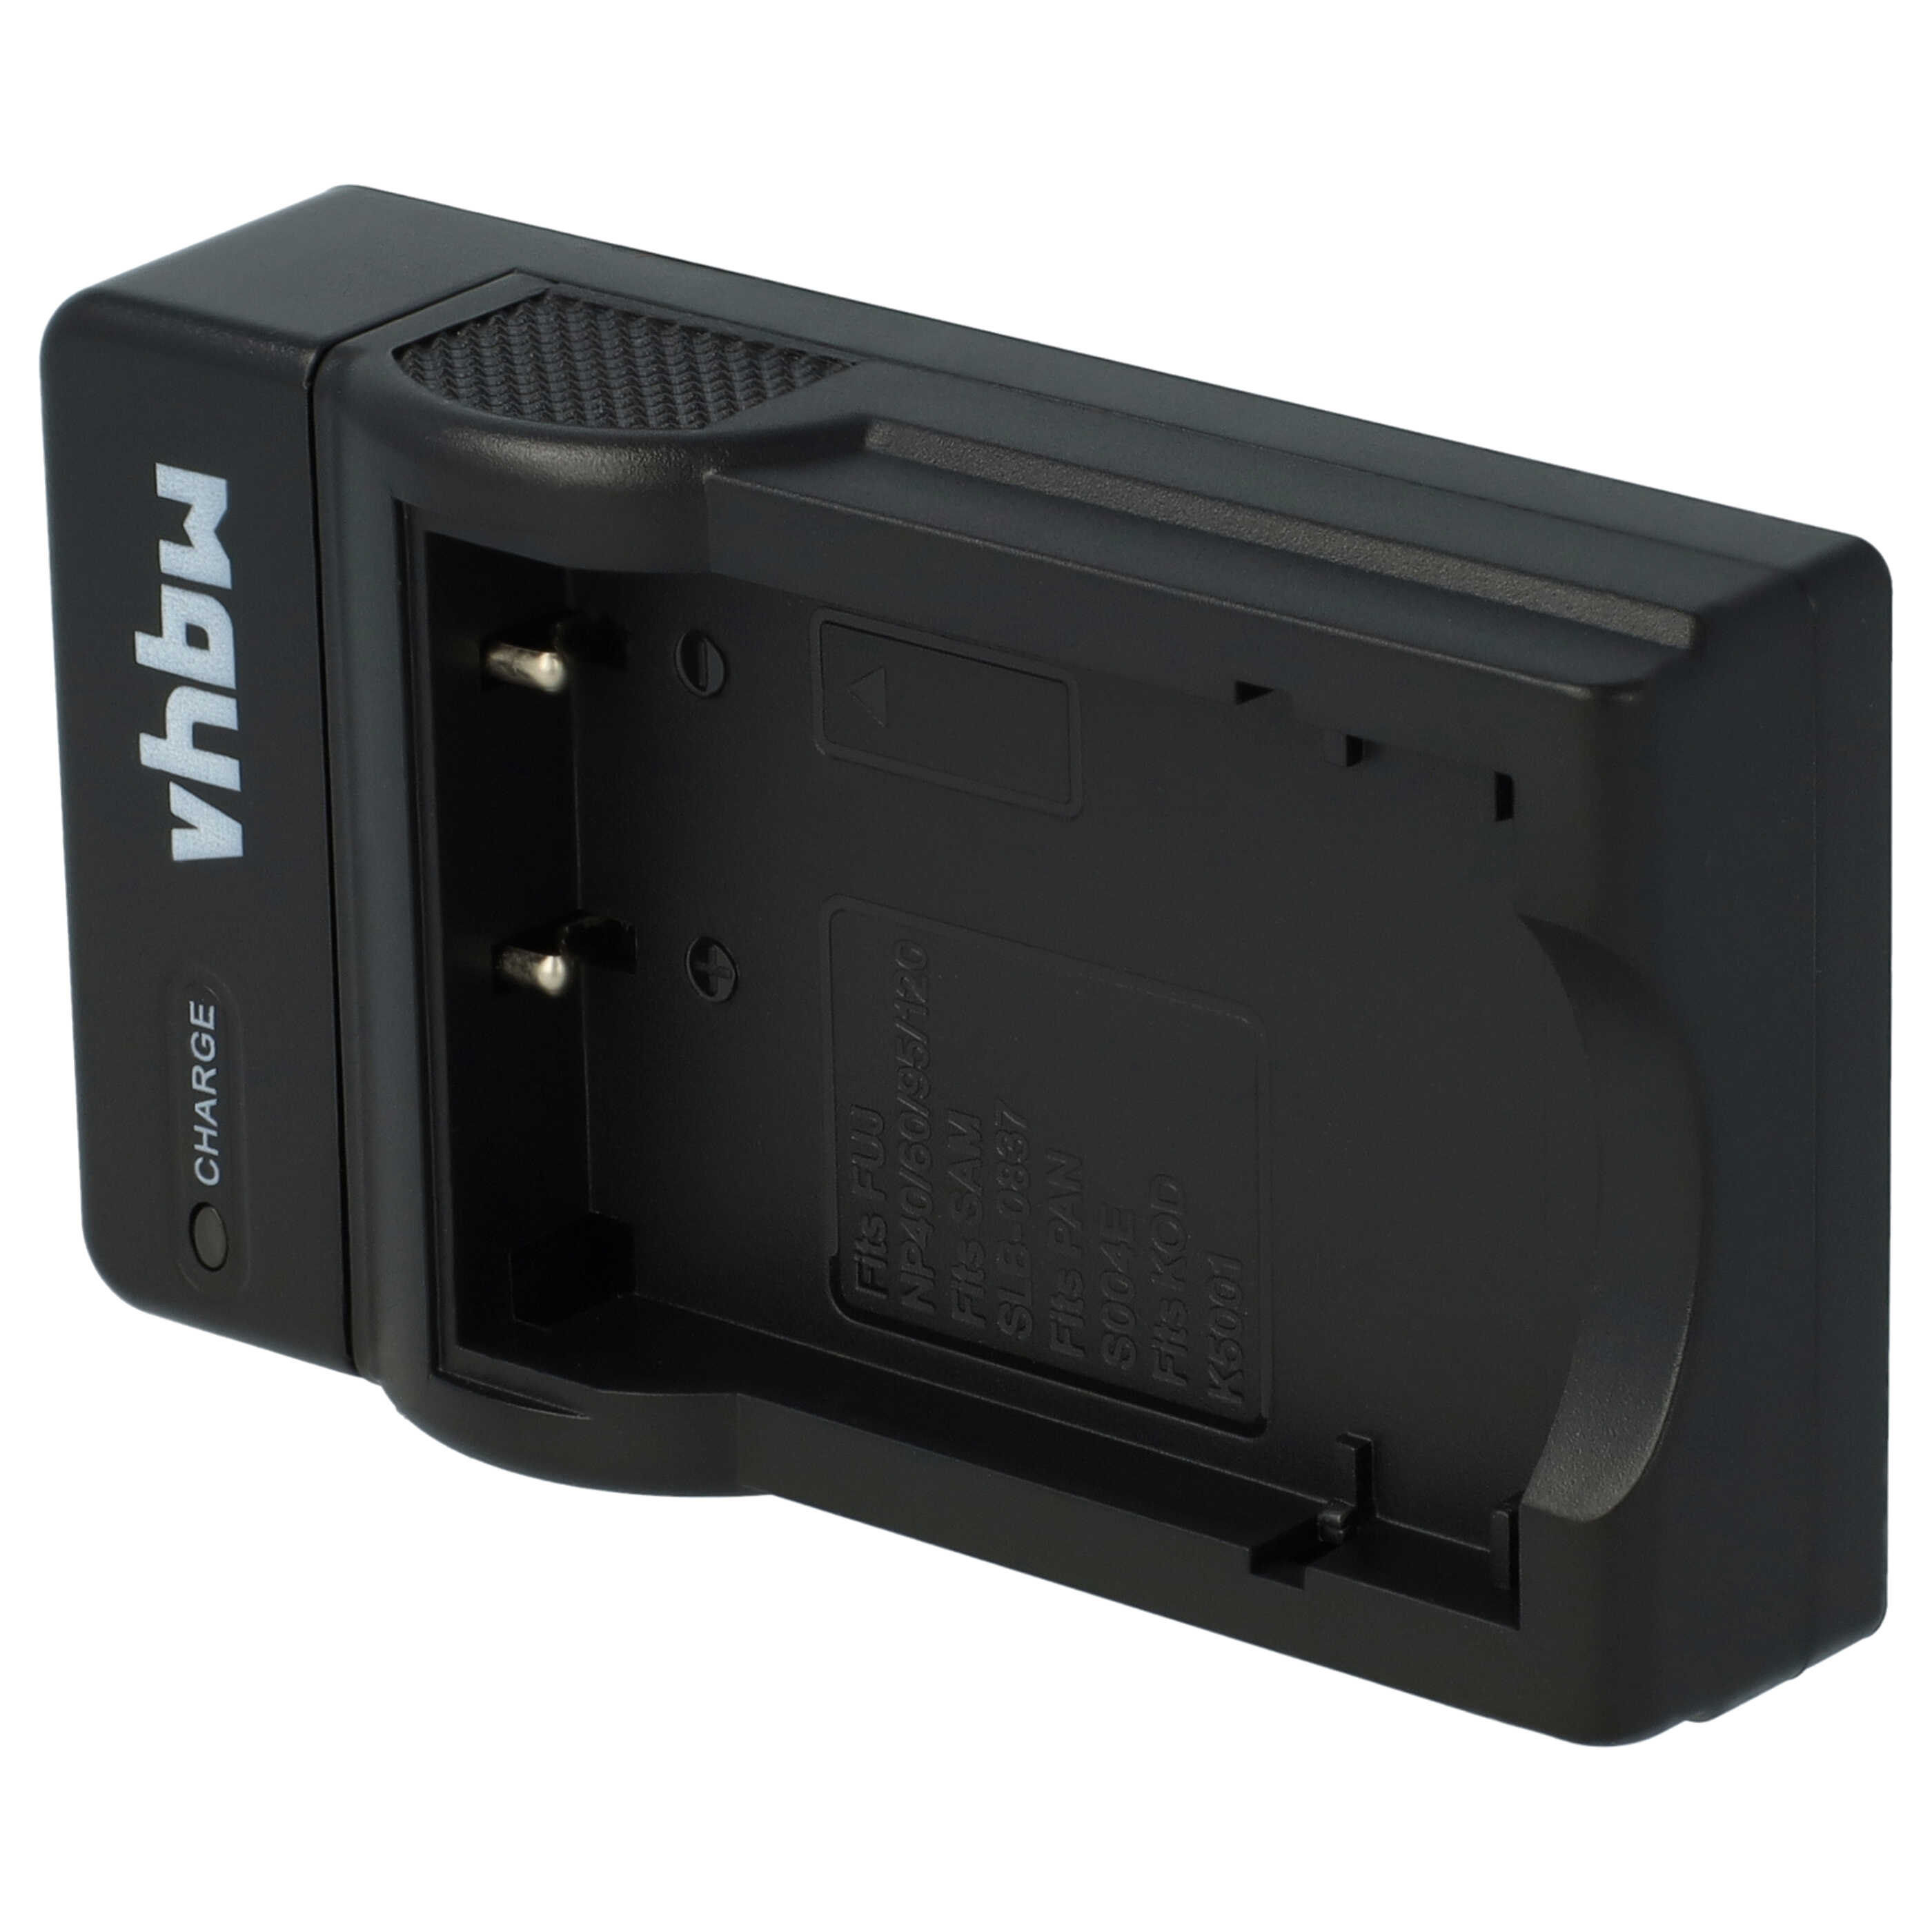 Akku Ladegerät passend für Belkin Digitalkamera und weitere - 0,5 A, 4,2 V